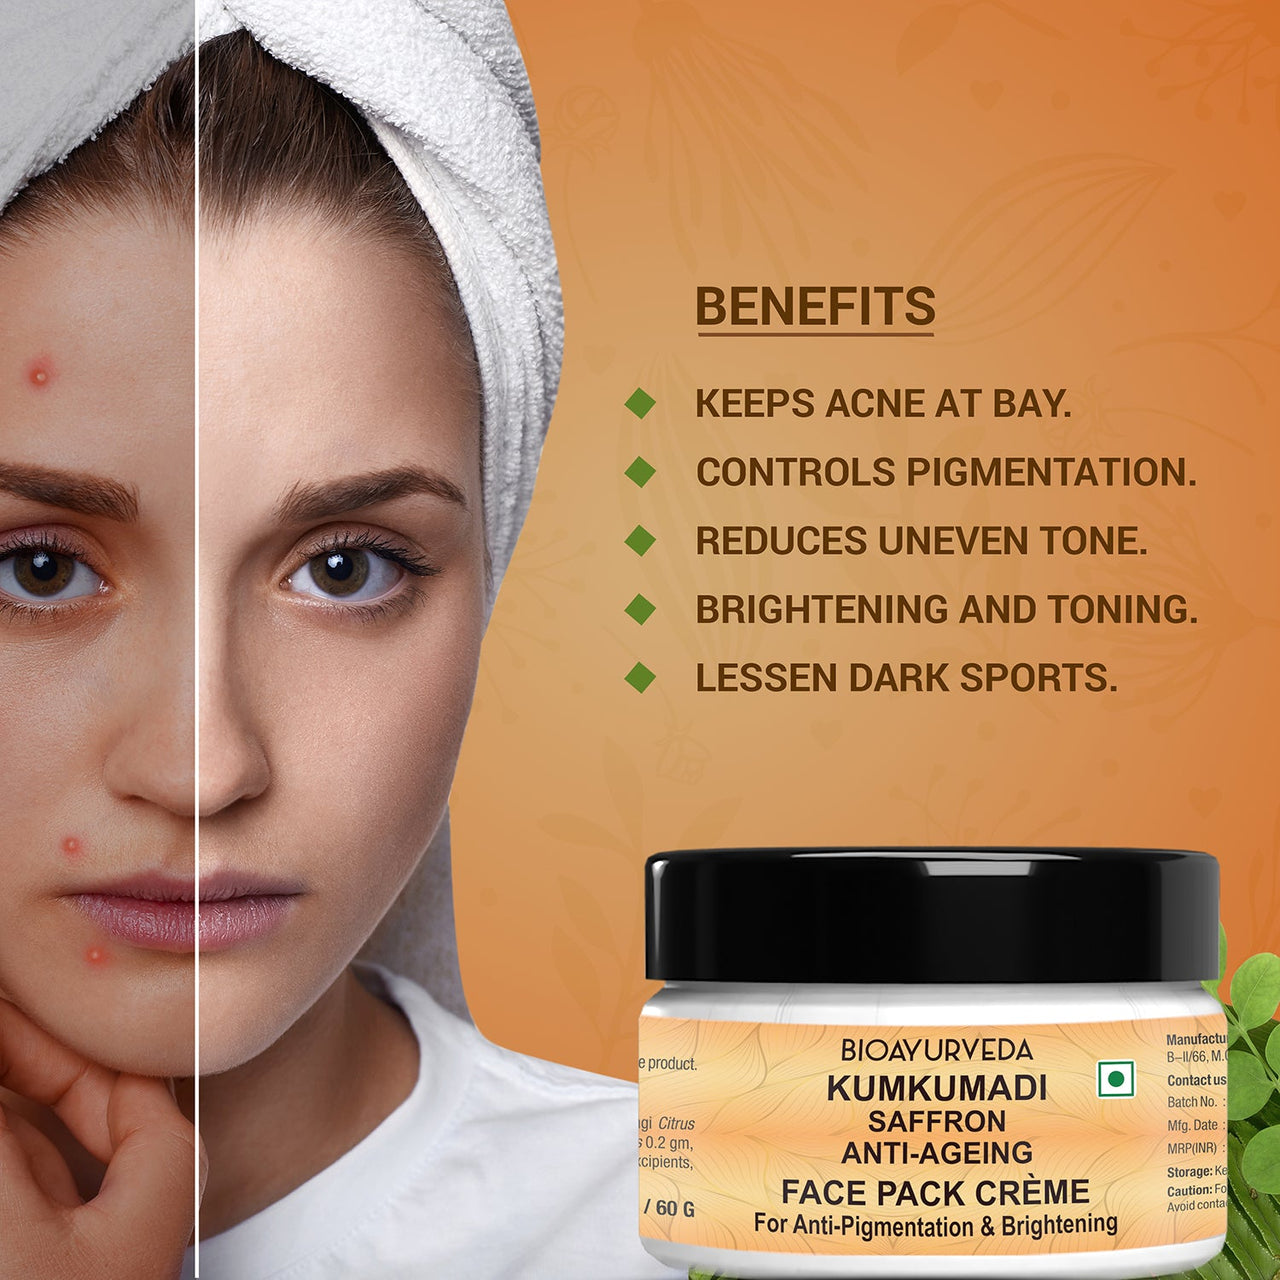 Kumkumadi Anti-Ageing Face Pack 60gm Cream Benefits